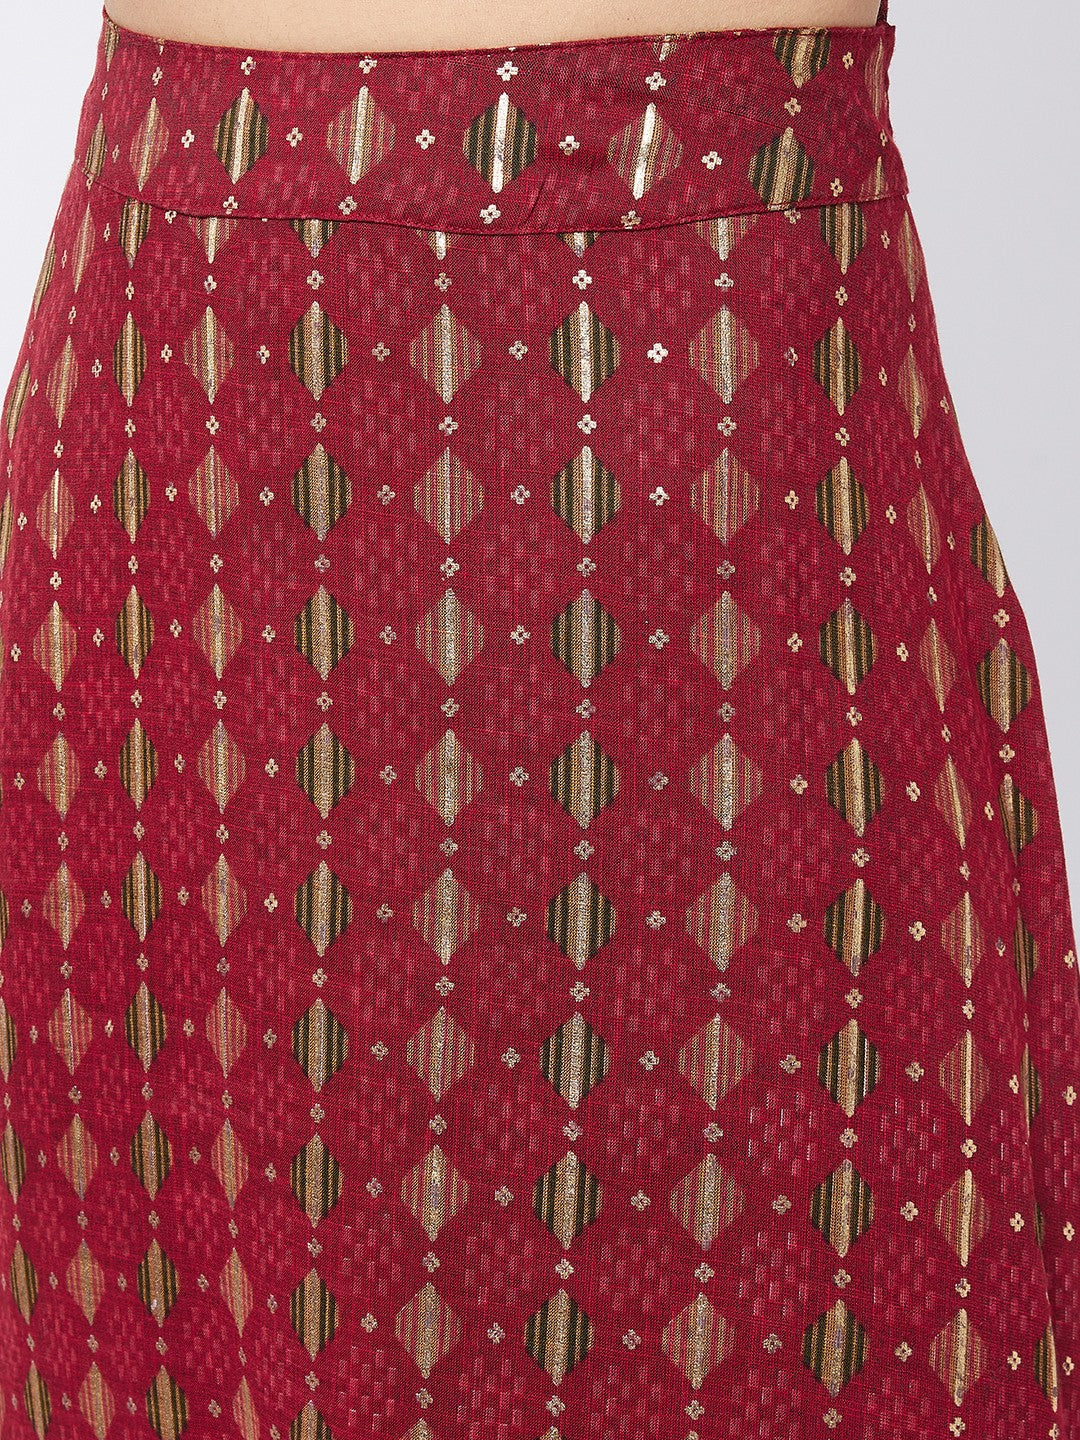 Garnet Red Side Slit Long Skirt